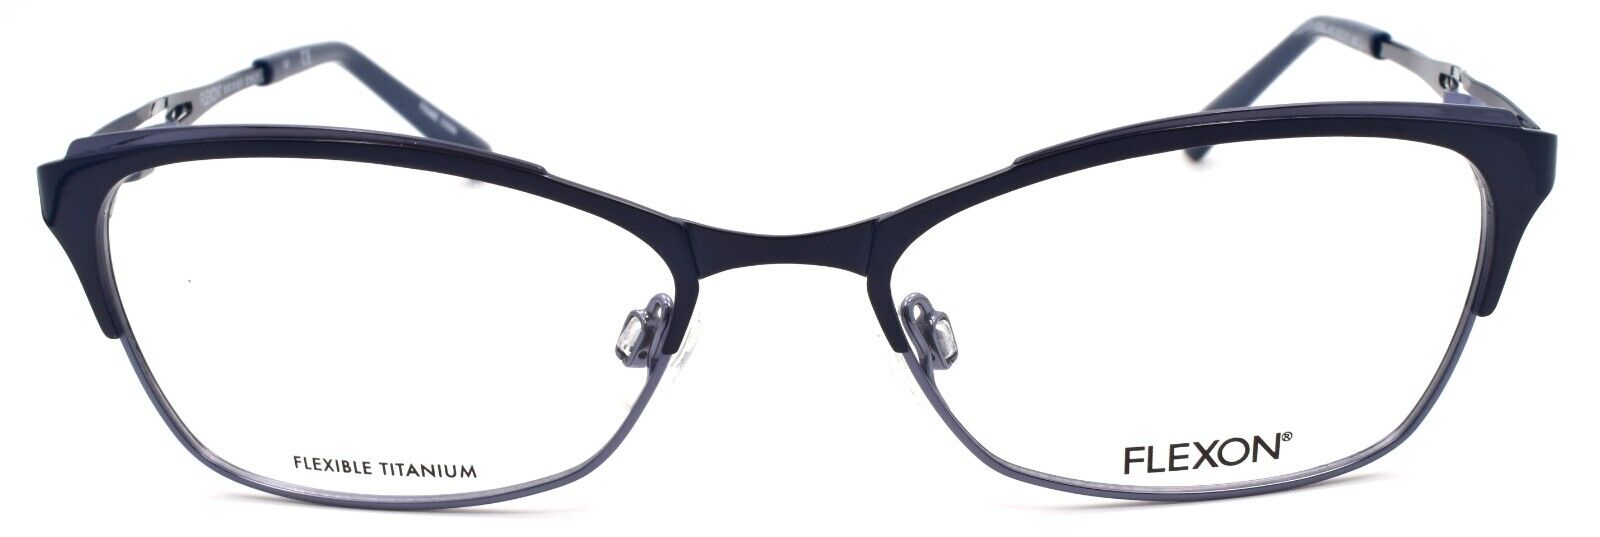 2-Flexon W3000 001 Women's Eyeglasses Frames Navy 53-17-135 Titanium Bridge-883900202879-IKSpecs